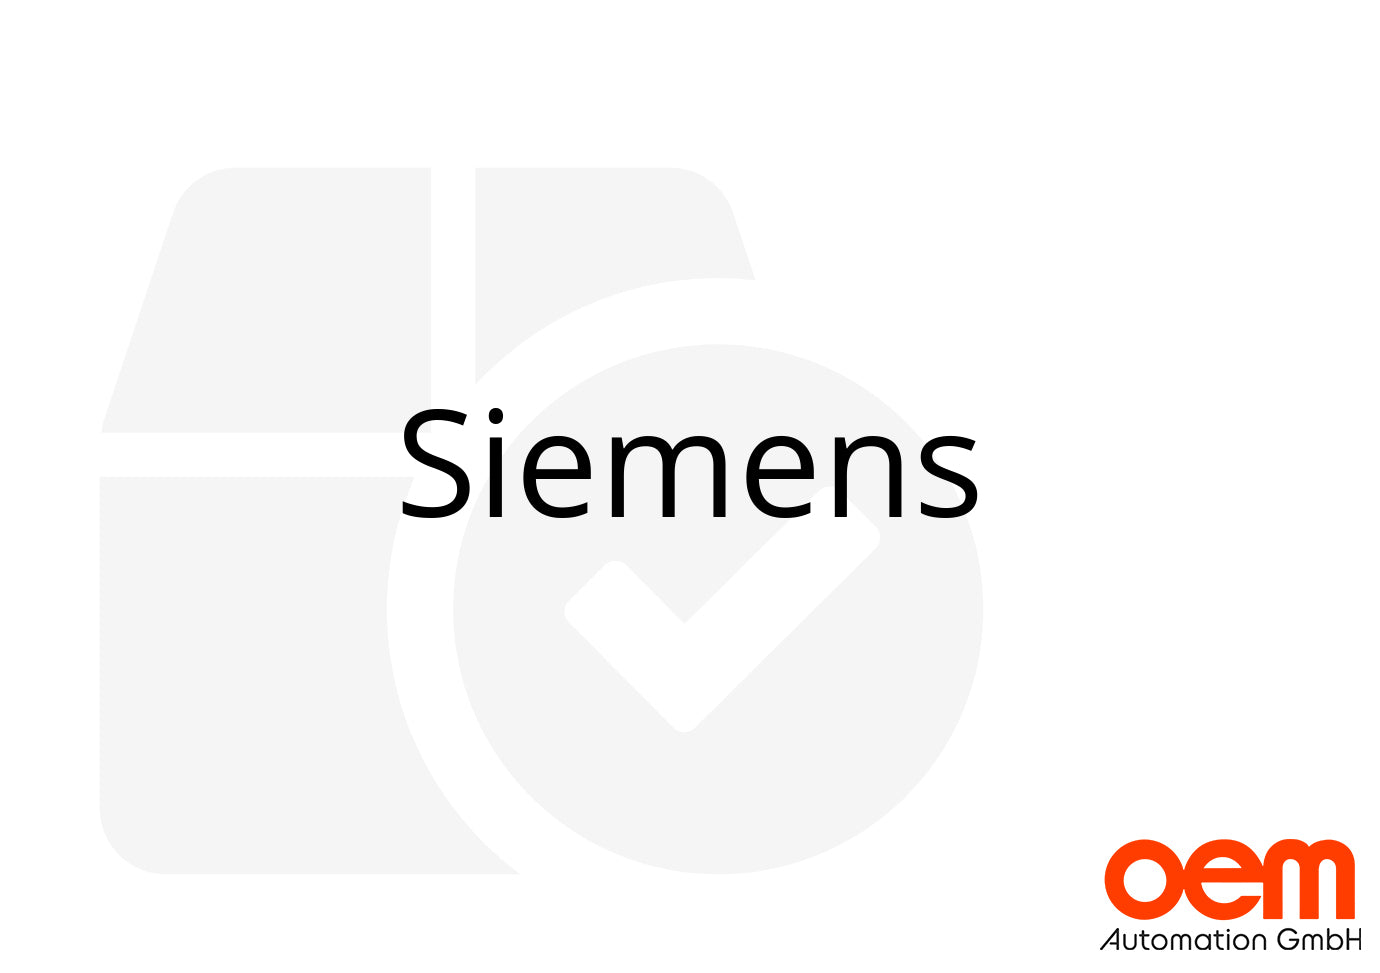 Siemens 6AV6642-0BD01-3AX0